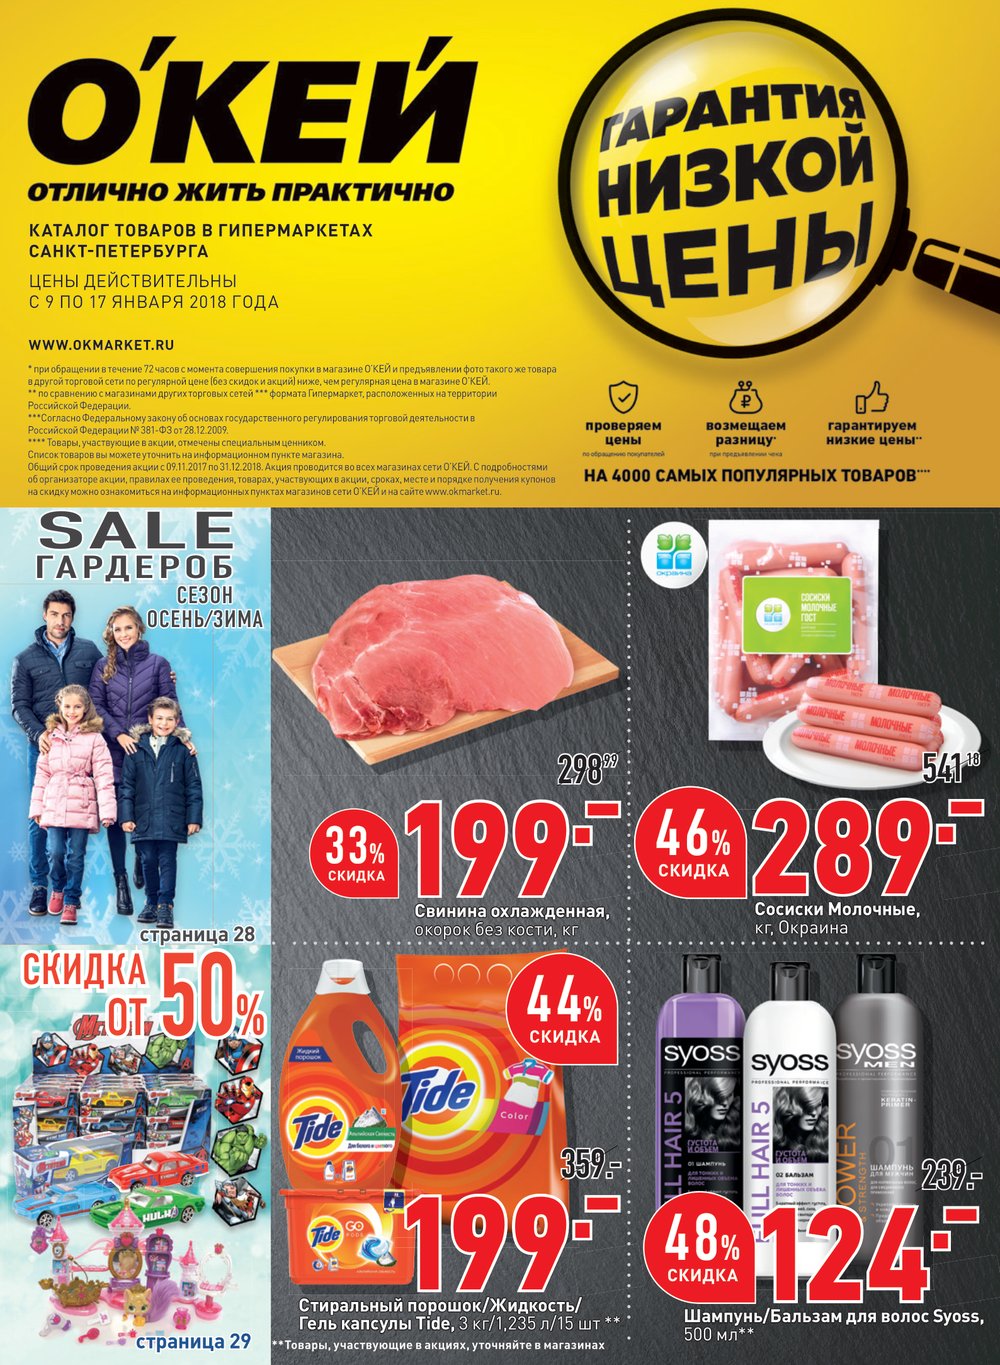 Акции в гипермаркетах санкт петербурга сегодня. Окей 2018. Каталоги окей 2018. Магазин ок каталог. Окей цены.